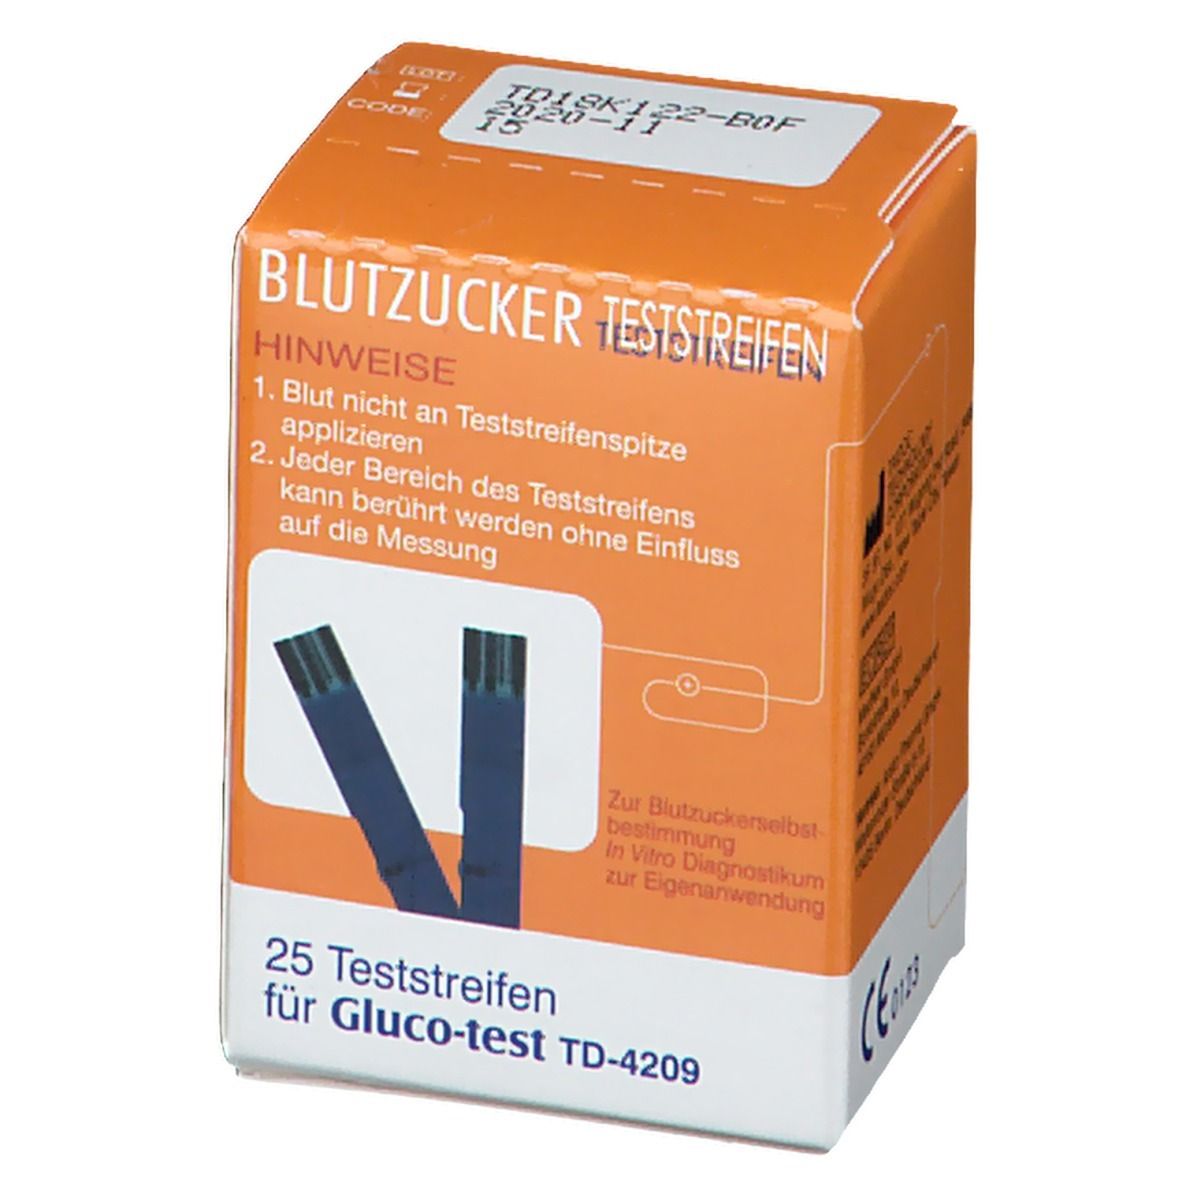 Gluco-test TD-4209 Blutzucker Teststreifen